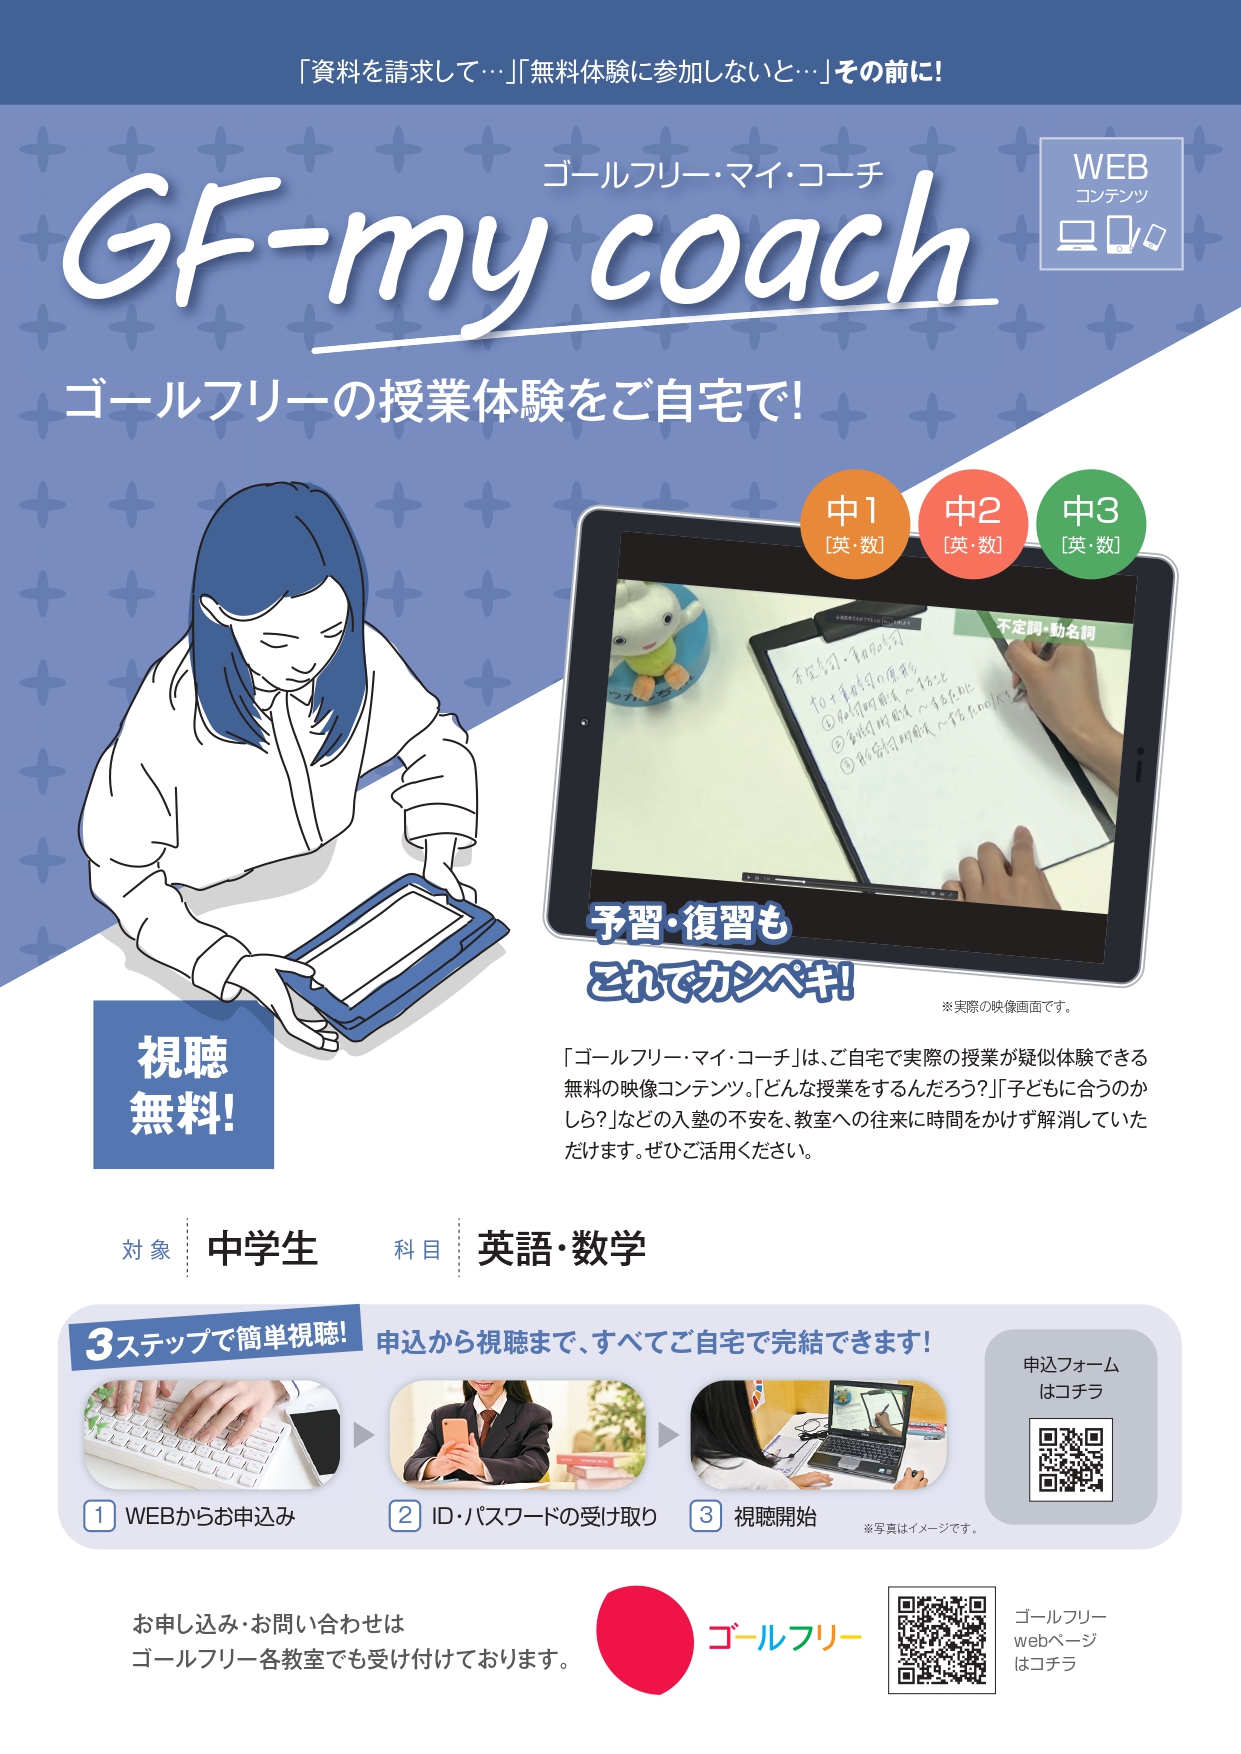 【一般生用】GF-my coach通年チラシ_pages-to-jpg-0001.jpg